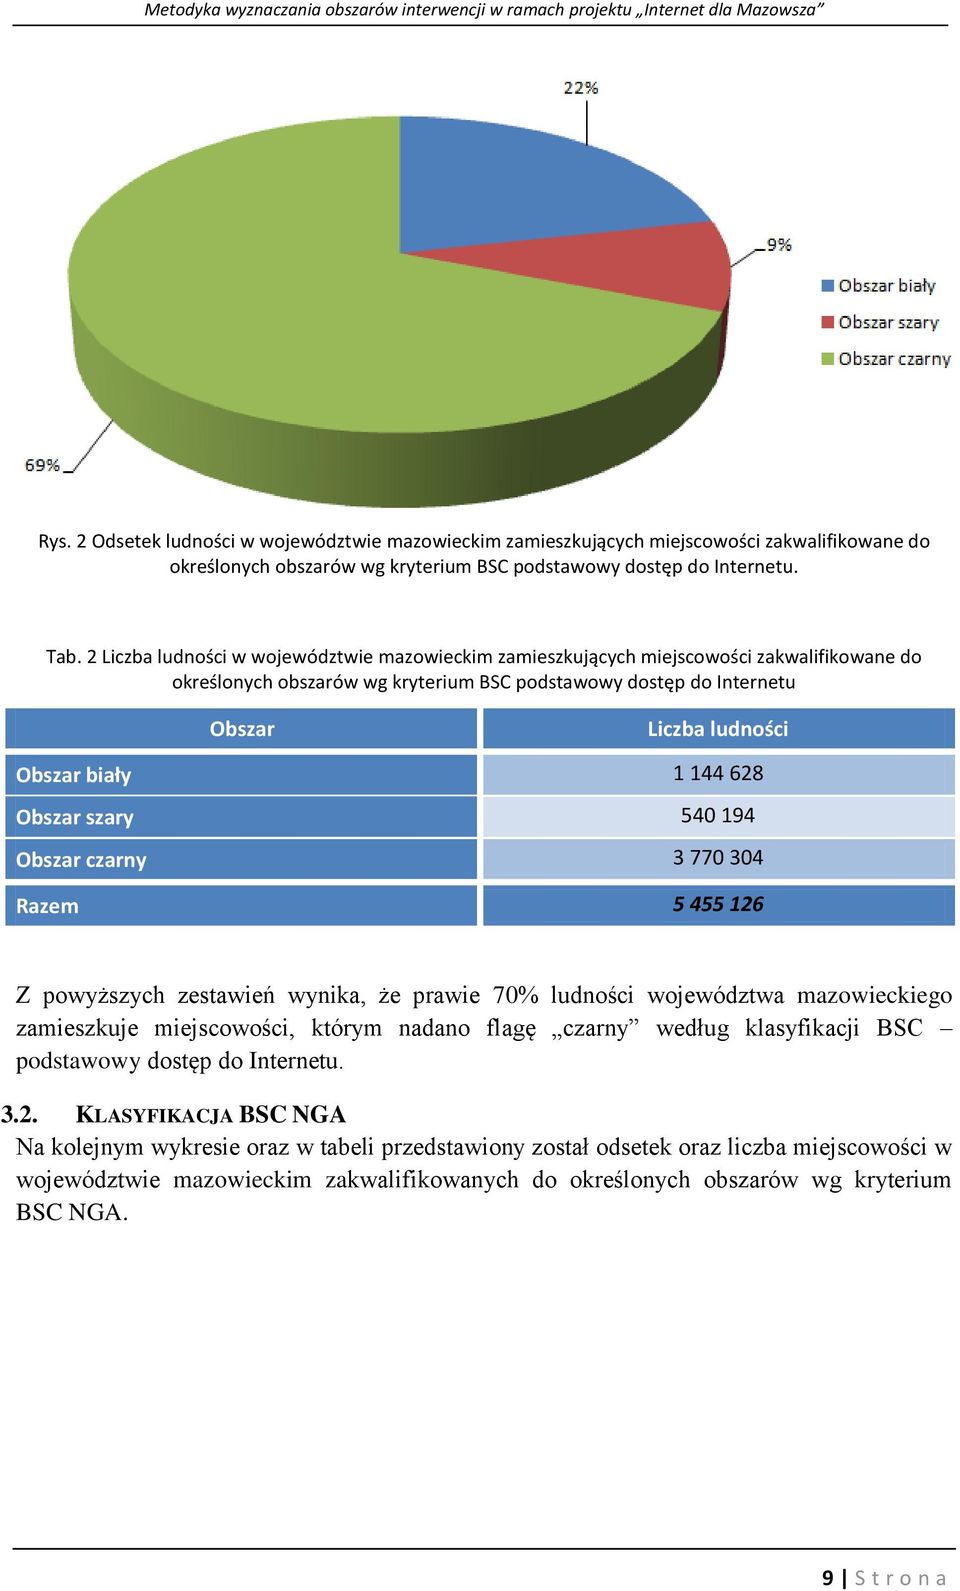 540 194 czarny 3 770 304 Razem 5 455 126 Z powyższych zestawień wynika, że prawie 70% ludności województwa mazowieckiego zamieszkuje miejscowości, którym nadano flagę czarny według klasyfikacji BSC